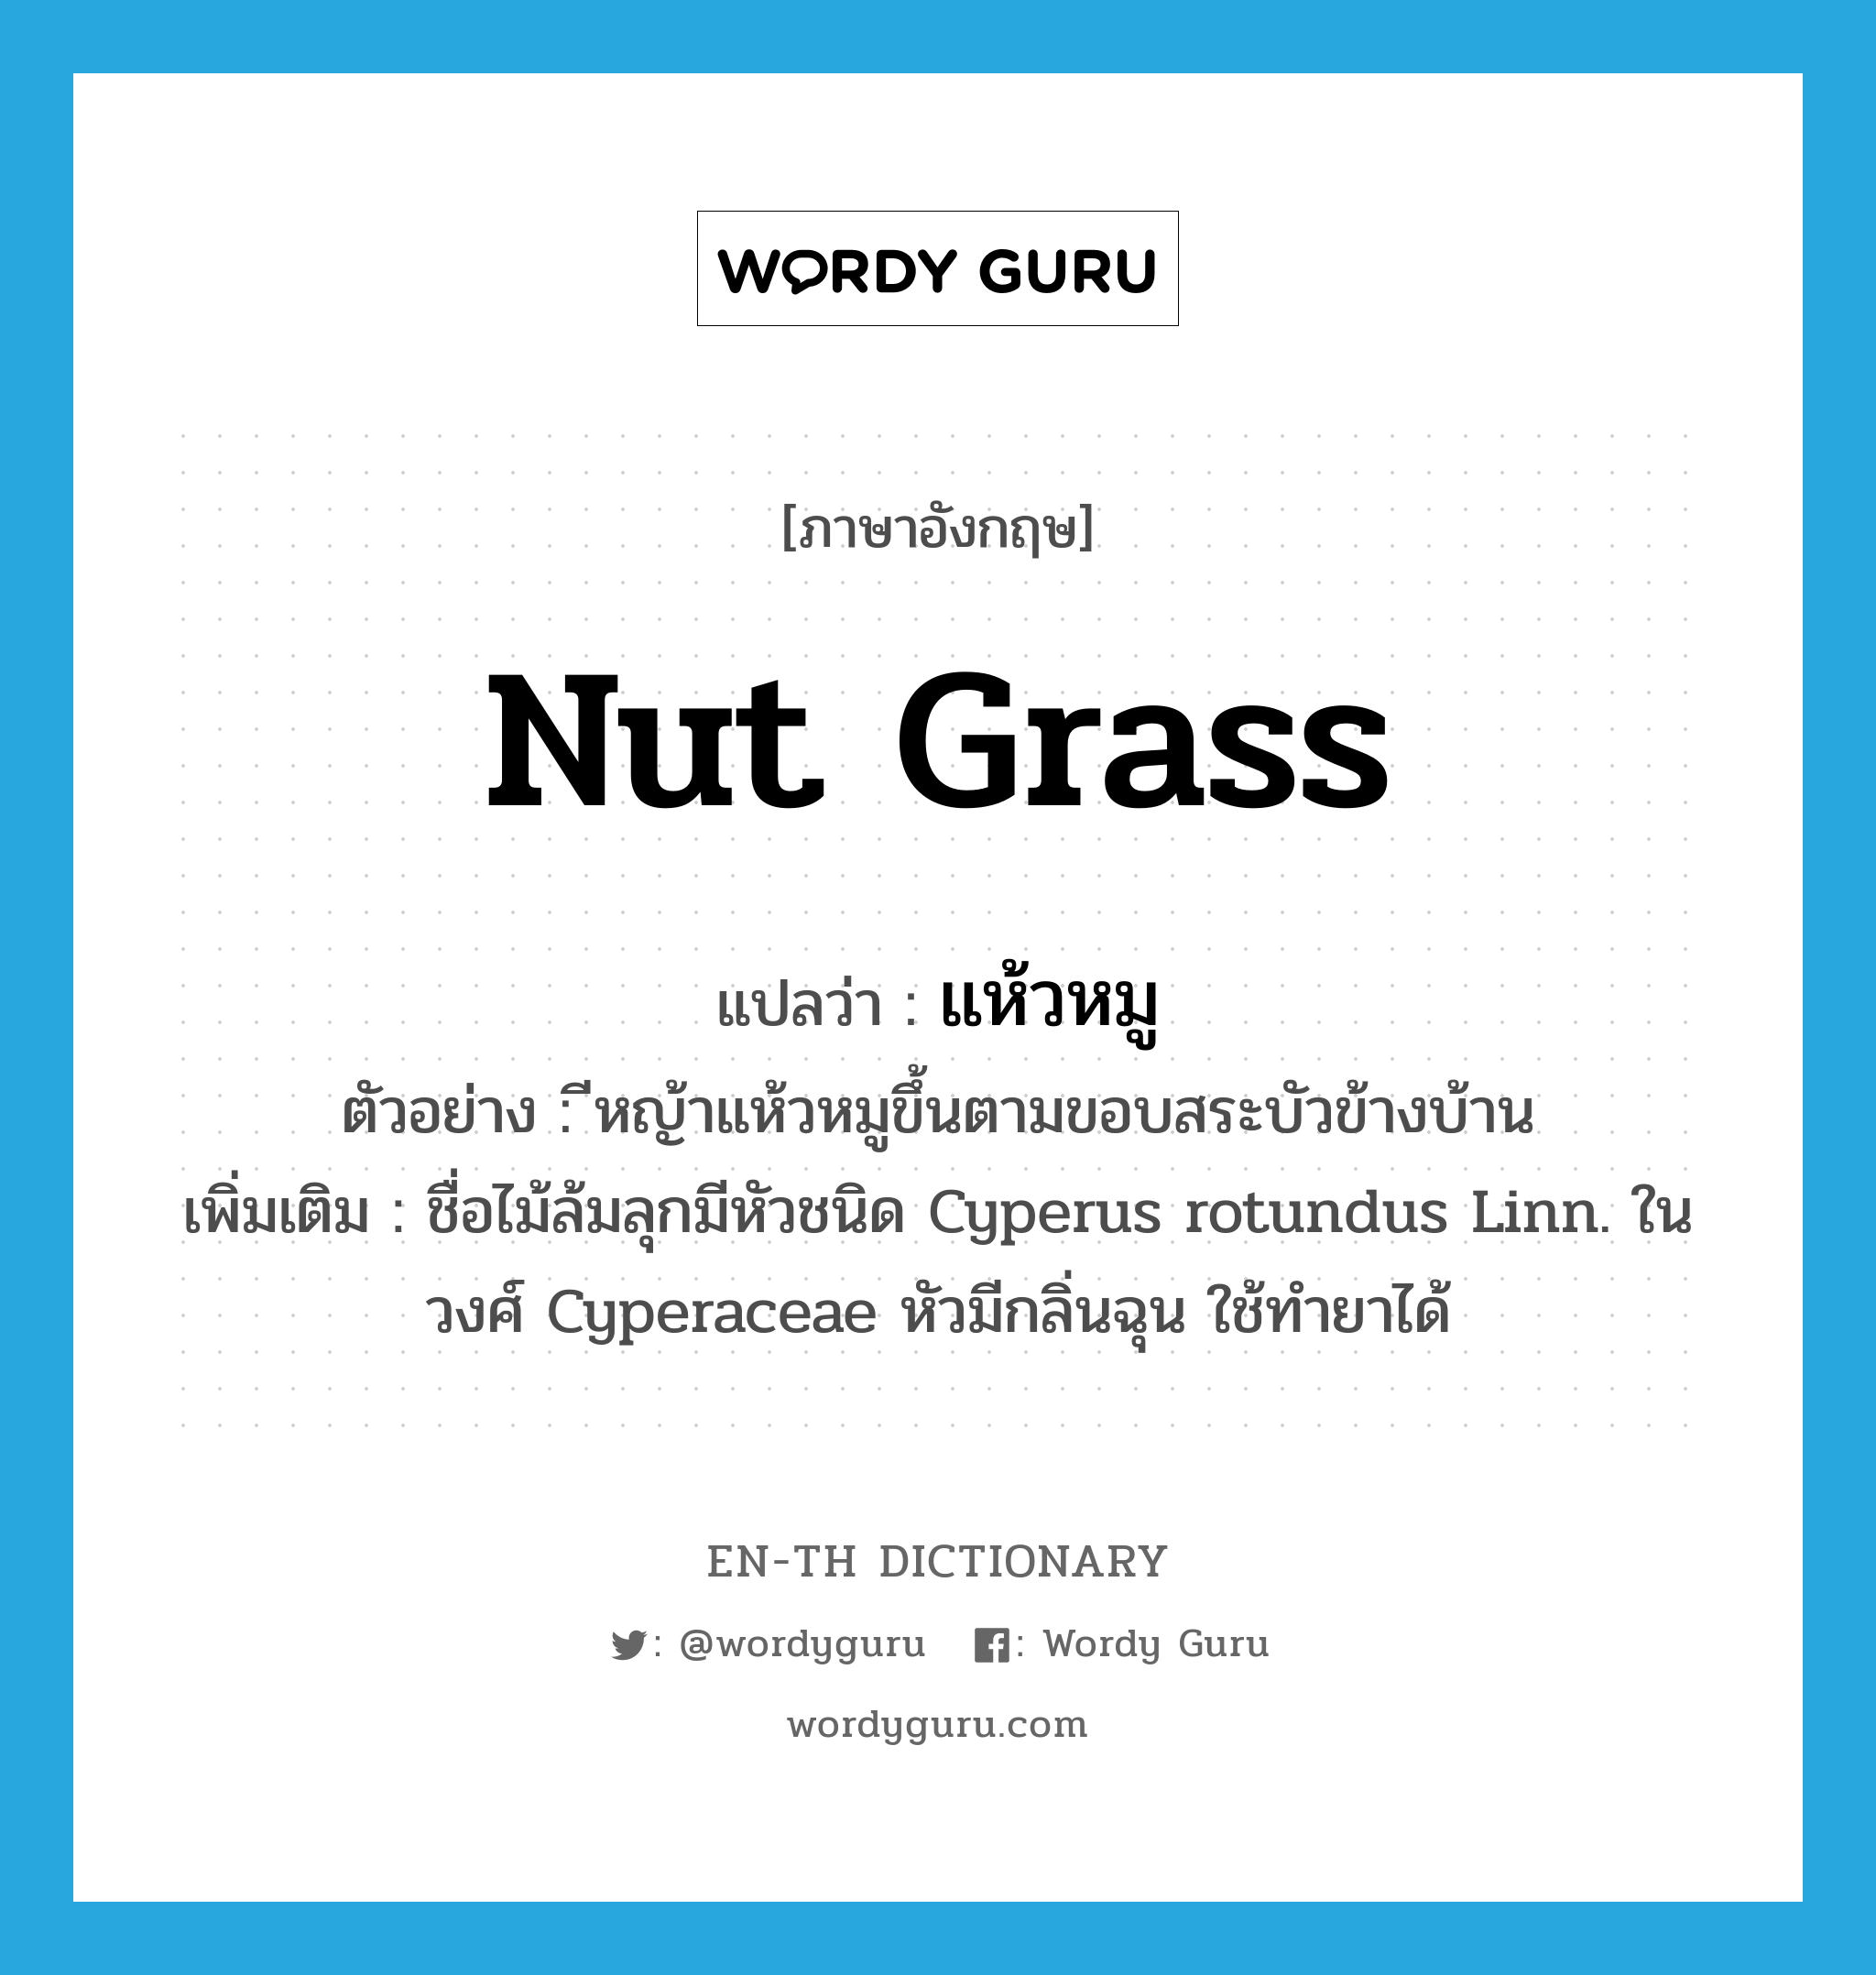 แห้วหมู ภาษาอังกฤษ?, คำศัพท์ภาษาอังกฤษ แห้วหมู แปลว่า nut grass ประเภท N ตัวอย่าง ีหญ้าแห้วหมูขึ้นตามขอบสระบัวข้างบ้าน เพิ่มเติม ชื่อไม้ล้มลุกมีหัวชนิด Cyperus rotundus Linn. ในวงศ์ Cyperaceae หัวมีกลิ่นฉุน ใช้ทำยาได้ หมวด N